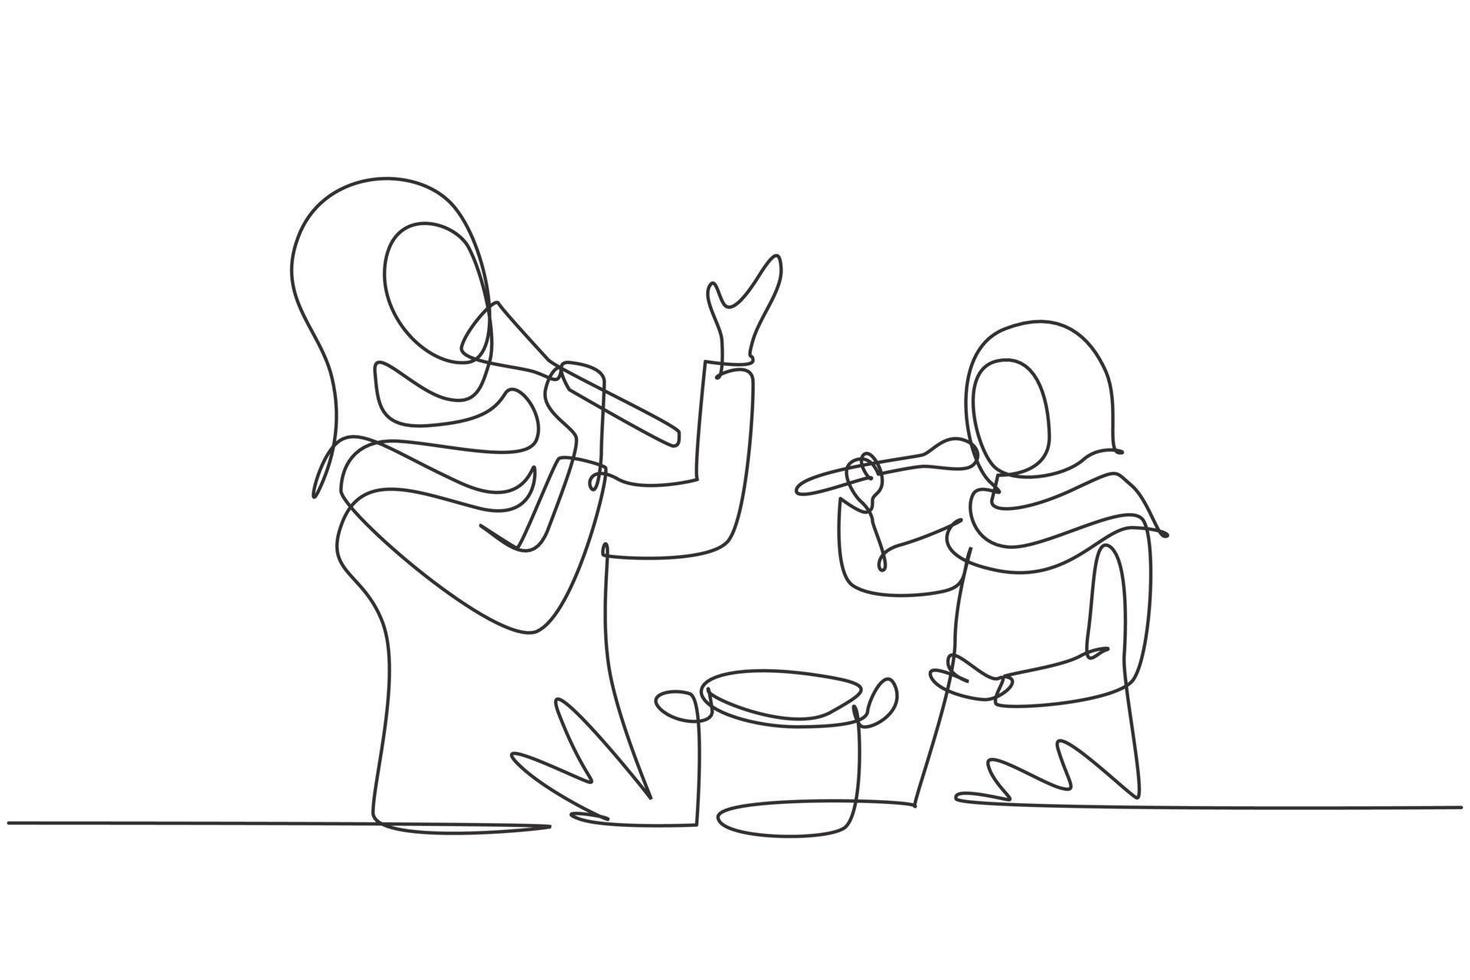 contínua uma linha desenhando a alegre mãe árabe e sua filha cantando enquanto cozinham juntas, usando espátula e colher como microfones. ilustração gráfica de vetor de desenho de linha única